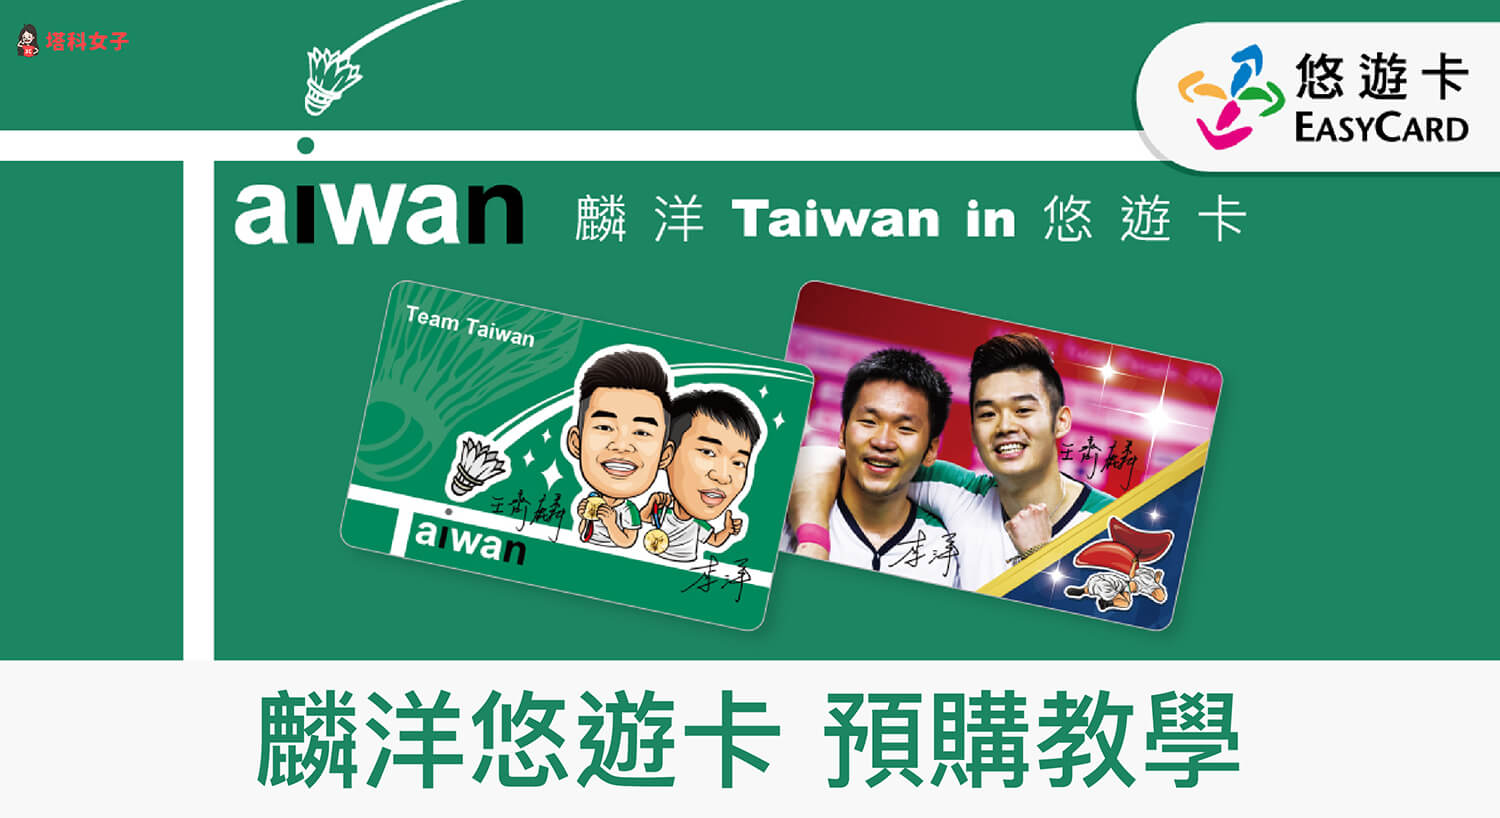 麟洋悠遊卡怎麼預購？「麟洋Taiwan in悠遊卡」預購資訊整理與教學！